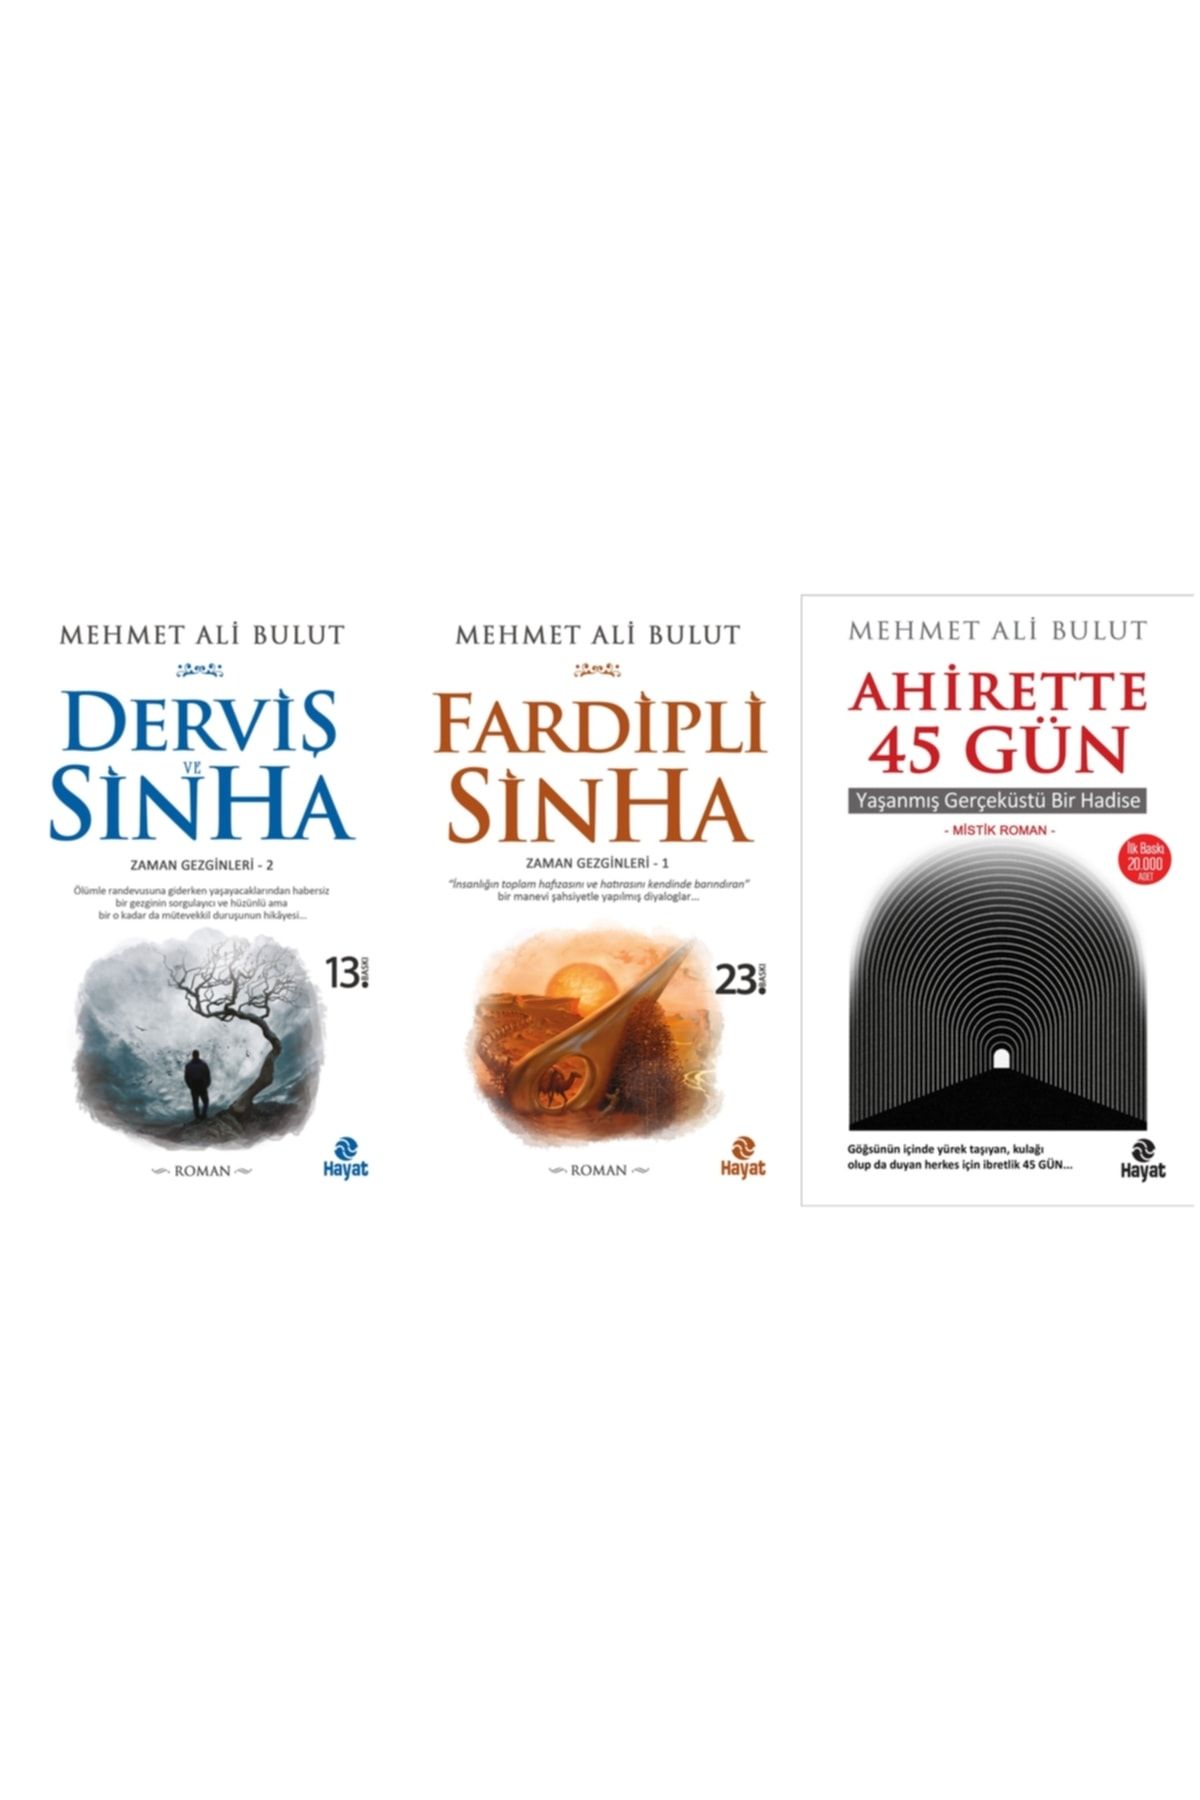 Hayat Yayınları Fardipli Sinha + Derviş Ve Sinha + Ahirette 45 Gün Mehmet Ali Bulut 3 Kitap